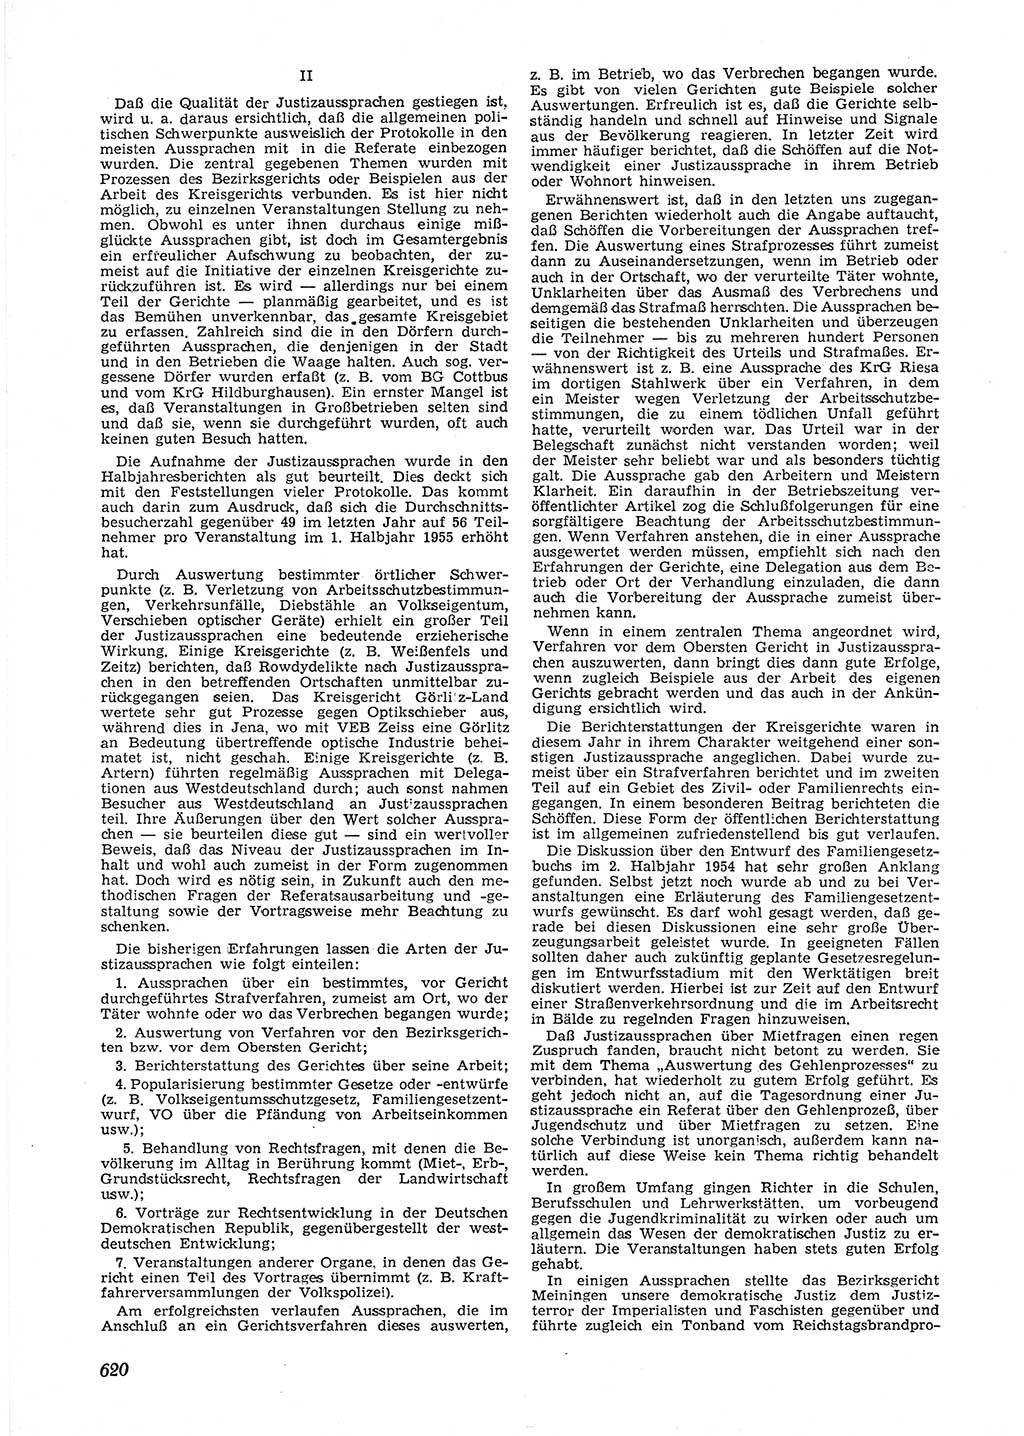 Neue Justiz (NJ), Zeitschrift für Recht und Rechtswissenschaft [Deutsche Demokratische Republik (DDR)], 9. Jahrgang 1955, Seite 620 (NJ DDR 1955, S. 620)